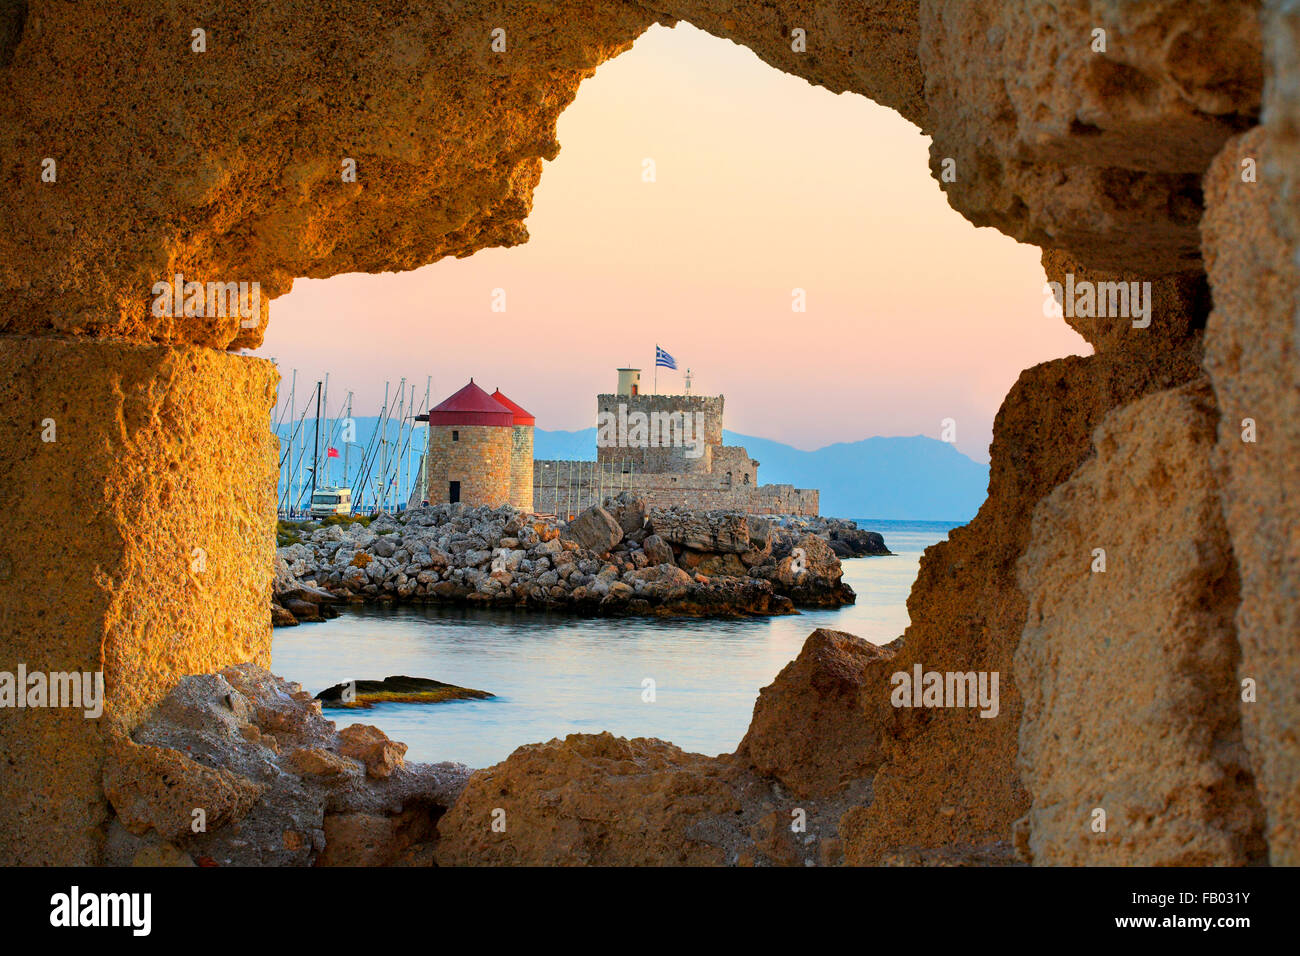 Il Castello e vecchi mulini a vento presso l'entrata di Mandrachi porto di Rodi, Grecia, UNESCO Foto Stock